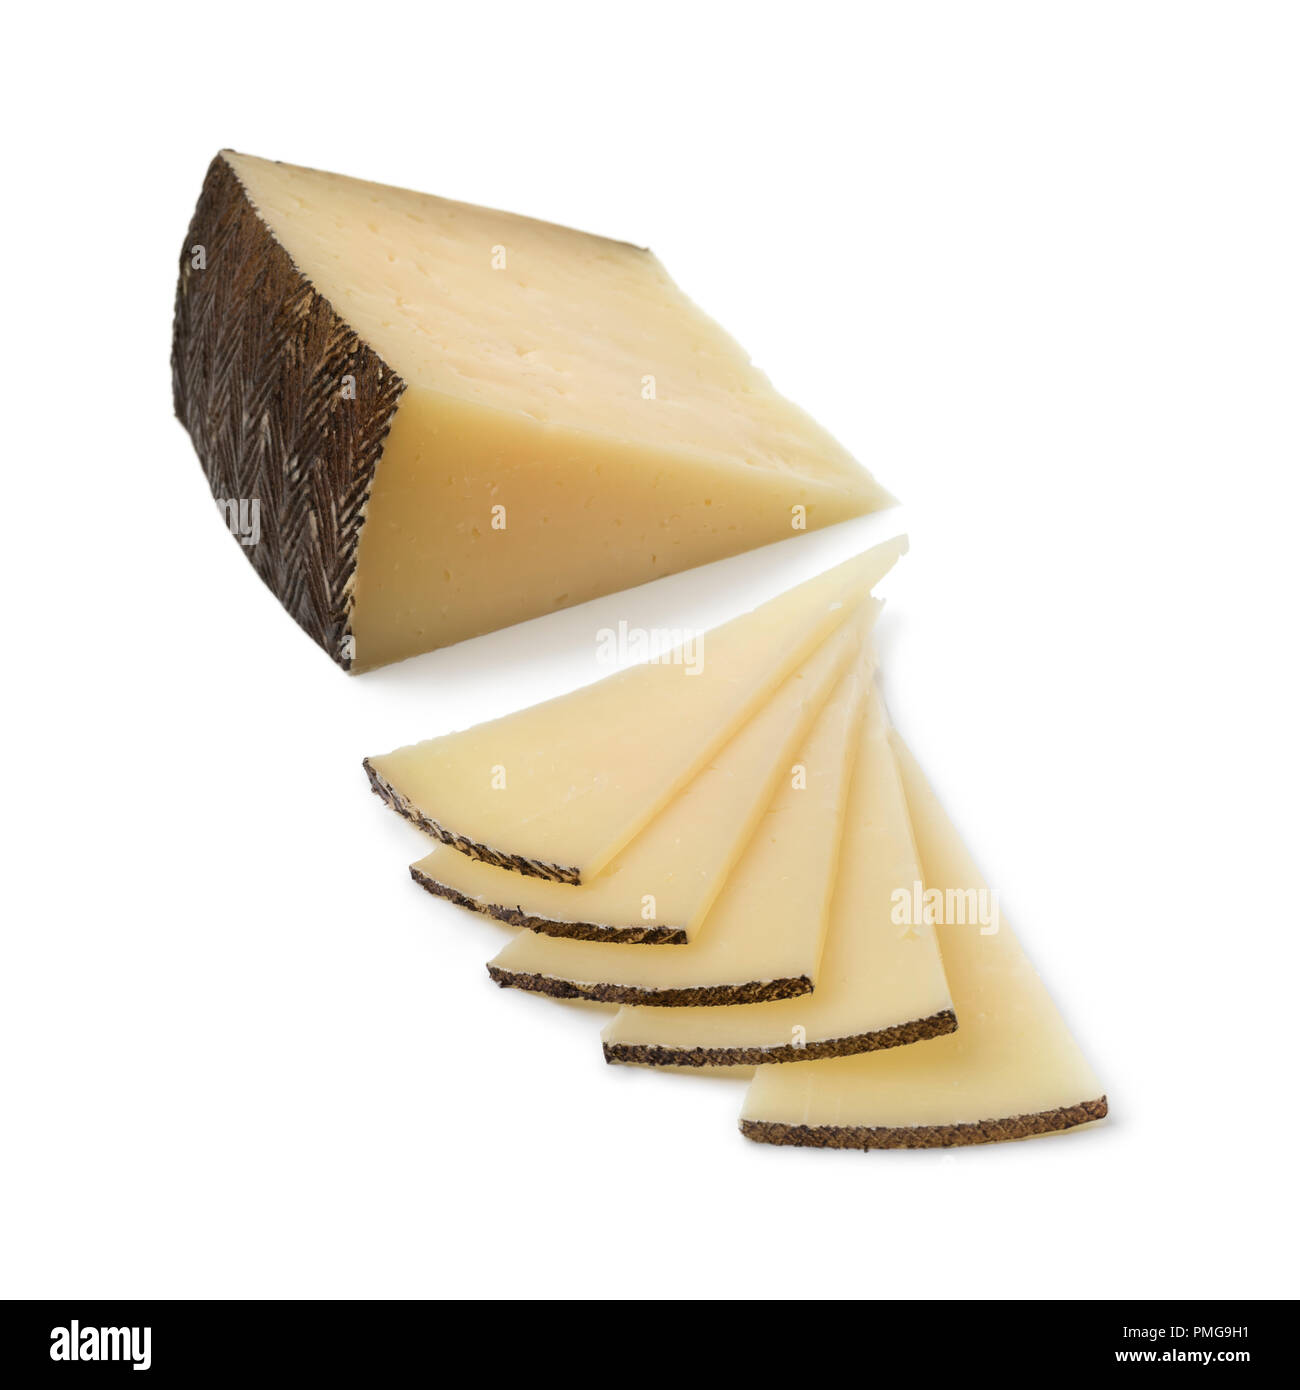 Tranches de fromage Manchego espagnol traditionnel isolé sur fond blanc Banque D'Images